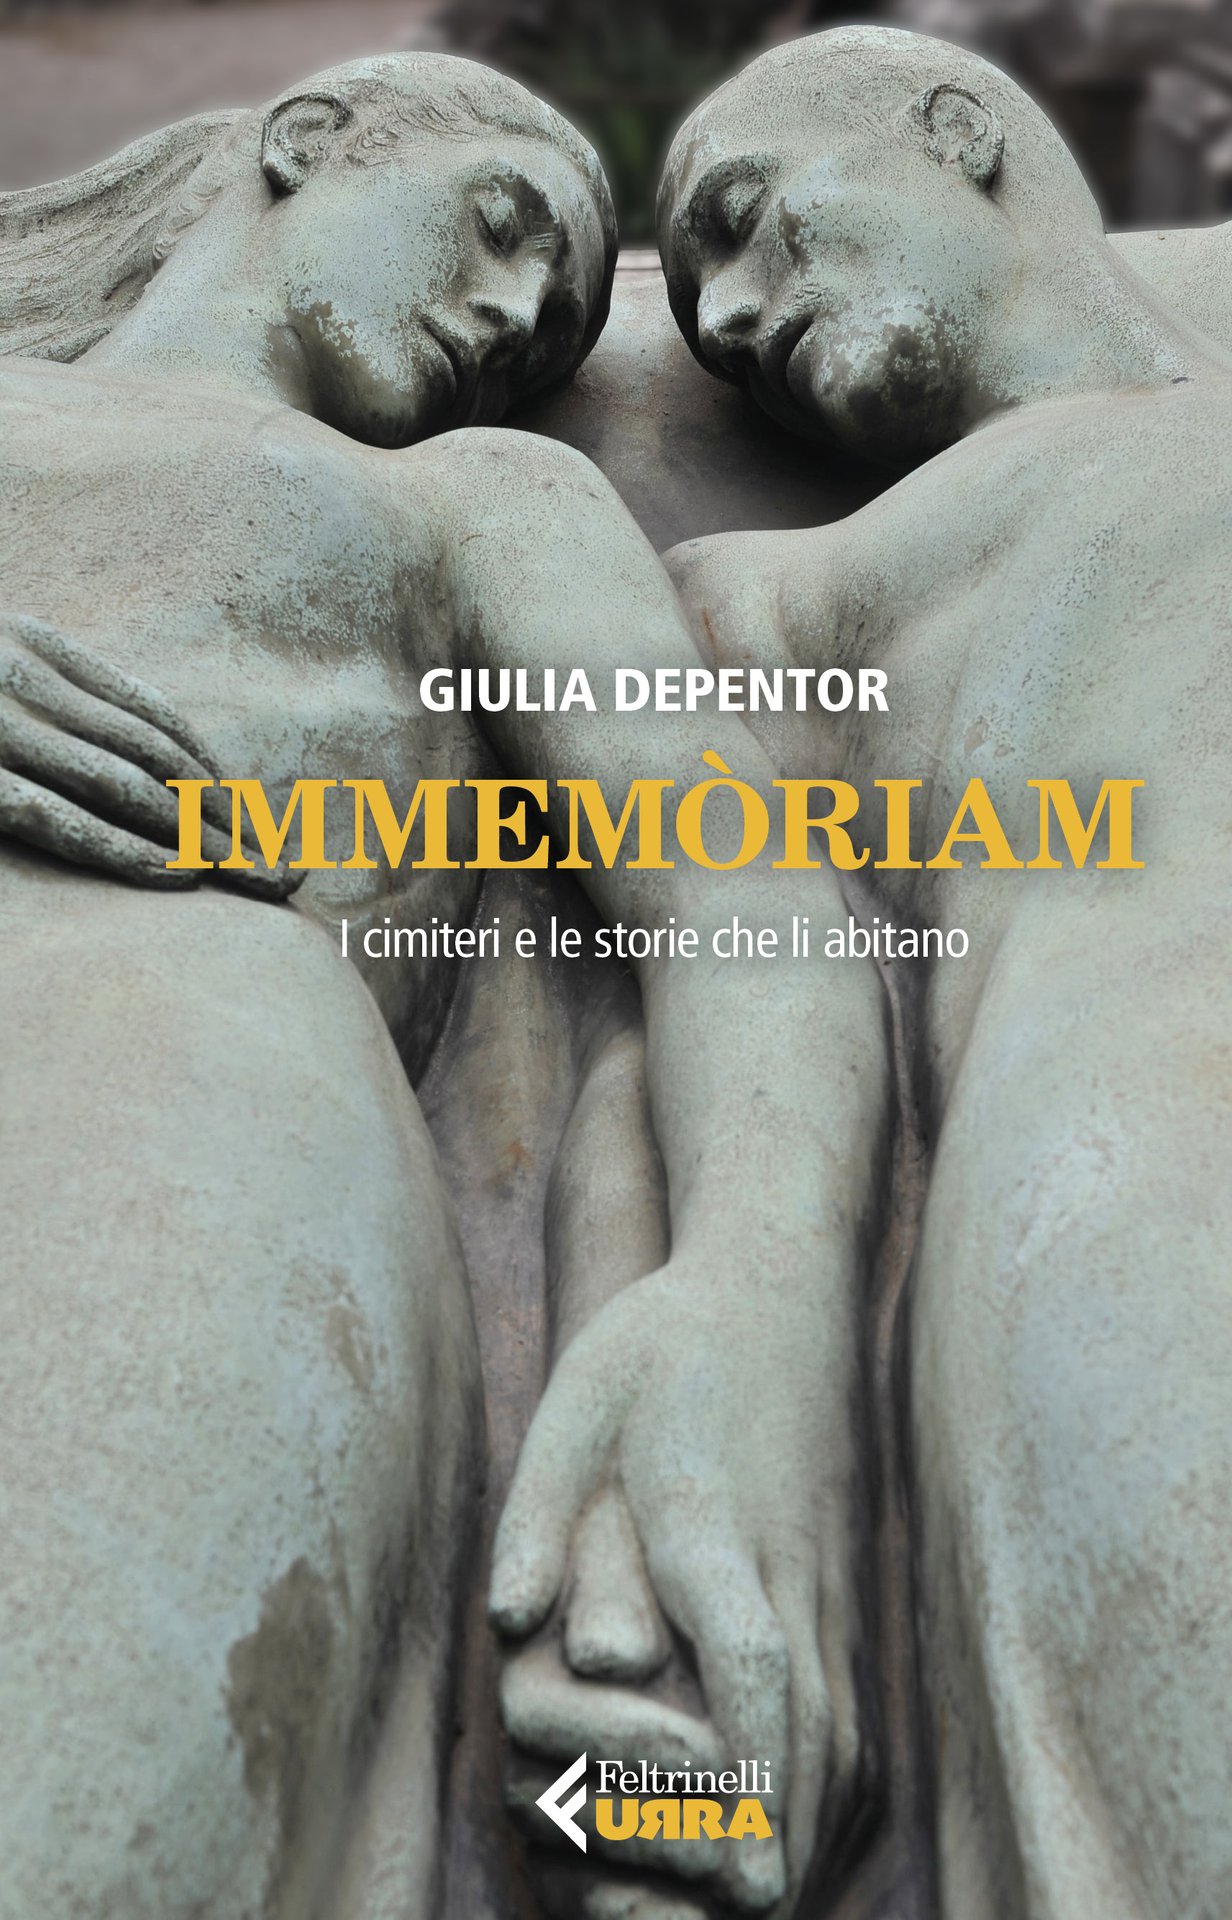 Giulia Depentor presenta "Immemòriam" alla libreria Tralerighe, Conegliano (TV)